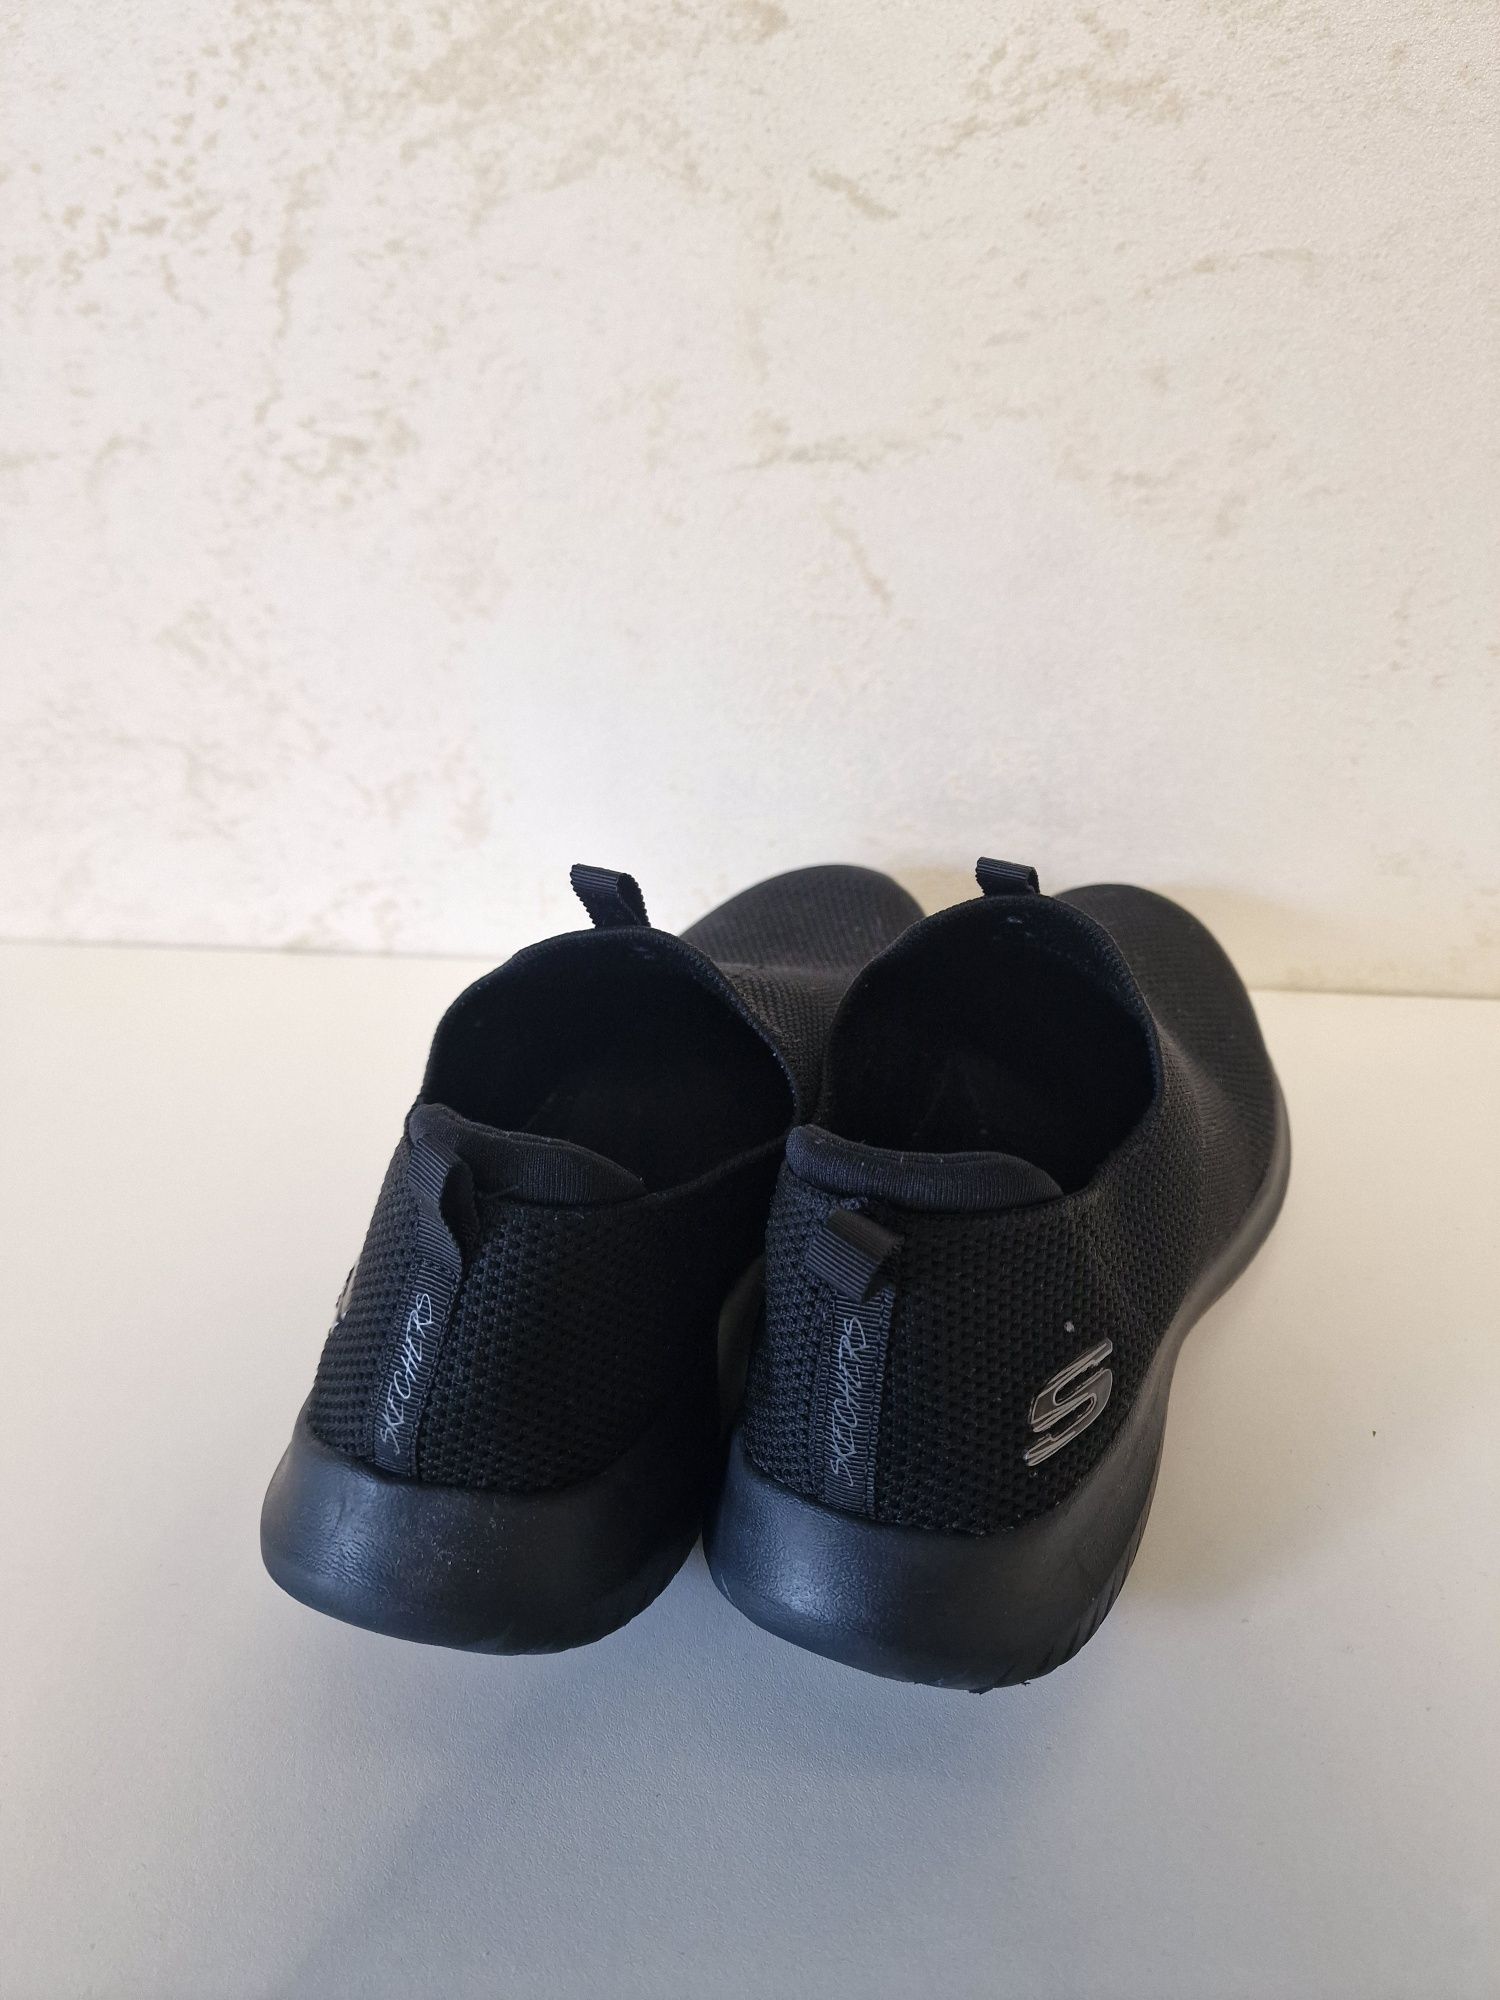 Adidasi Skechers Memory foam